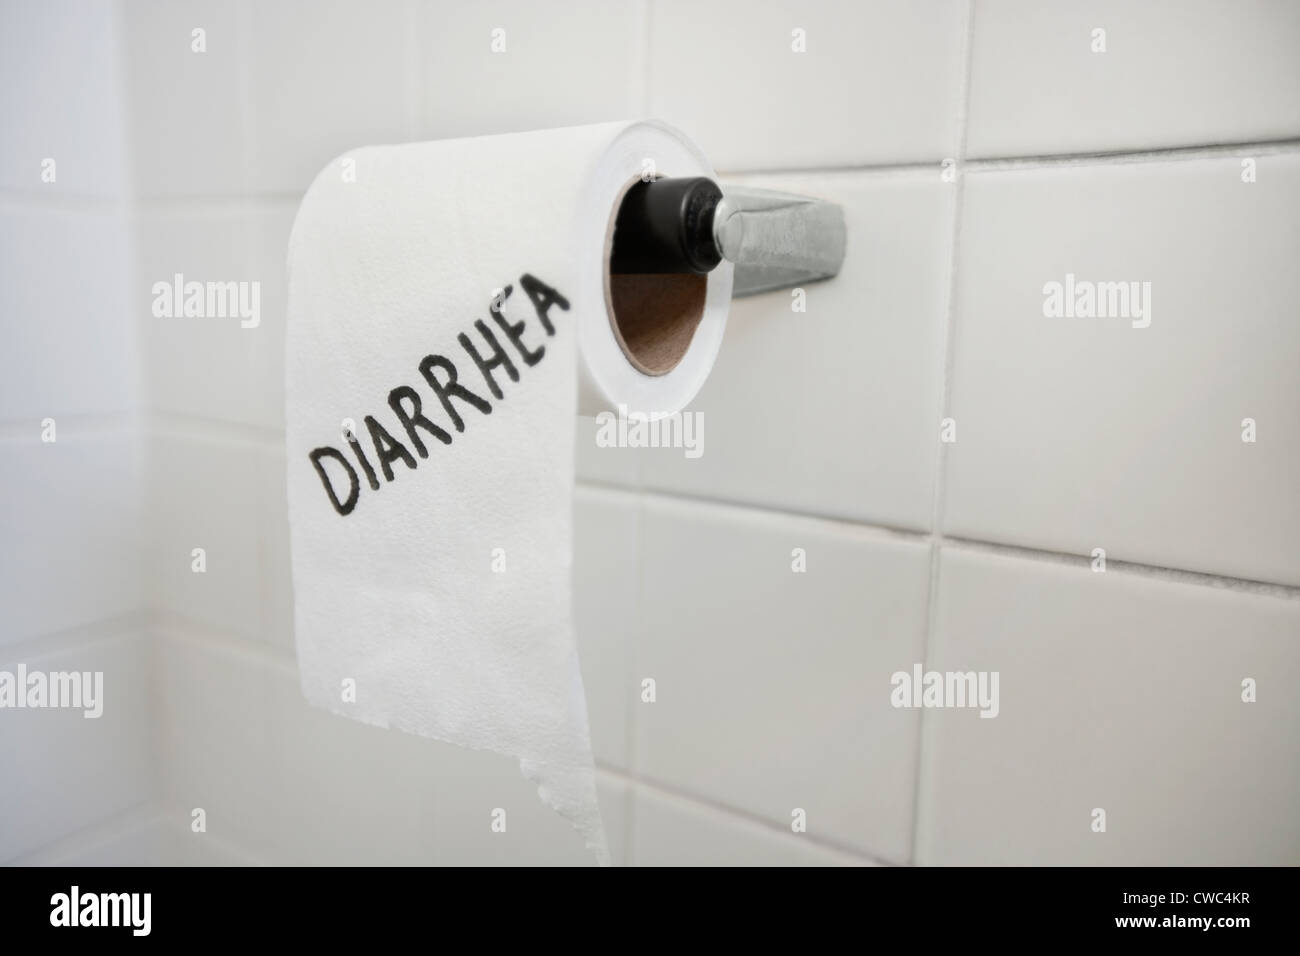 Close-up de rollo de papel higiénico con diarrea escrito en el baño. Foto de stock